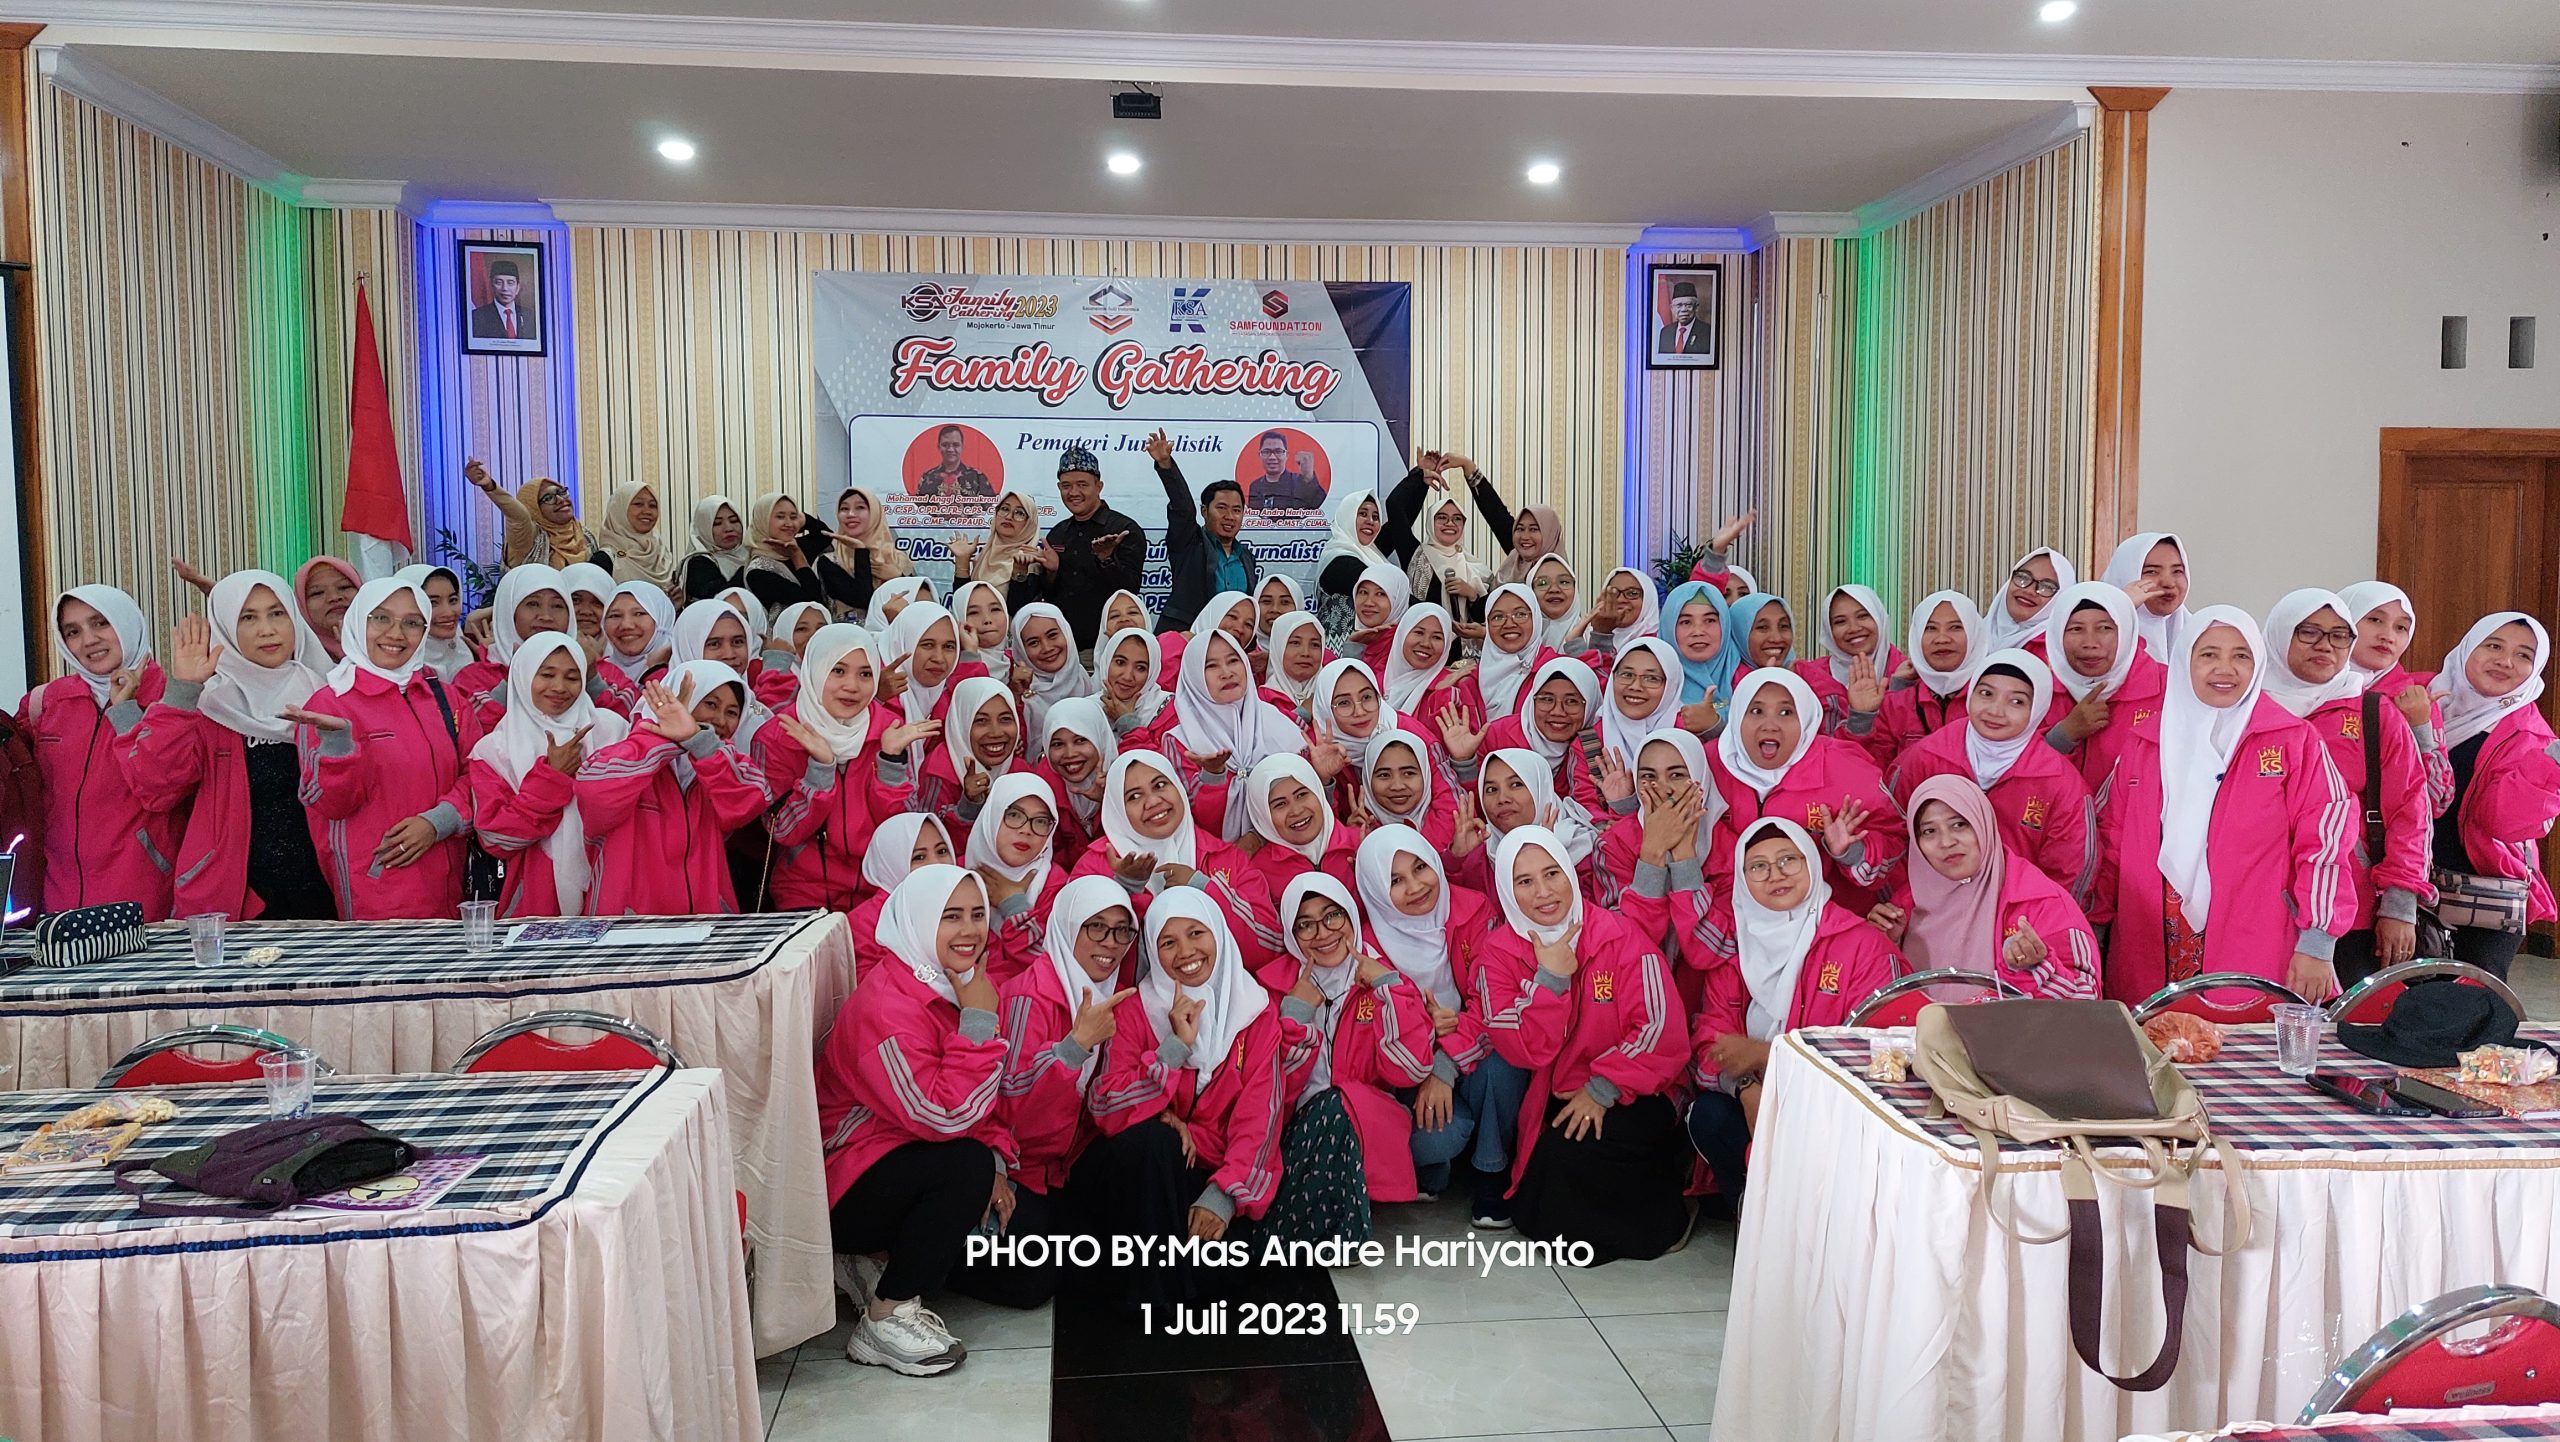 KSA Sukses Gelar Family Gathering dan Tasyakuran Kelulusan di Mojokerto. Foto: Mas Andre Hariyanto & Mbak Aisyah Putri (SUARA UTAMA)